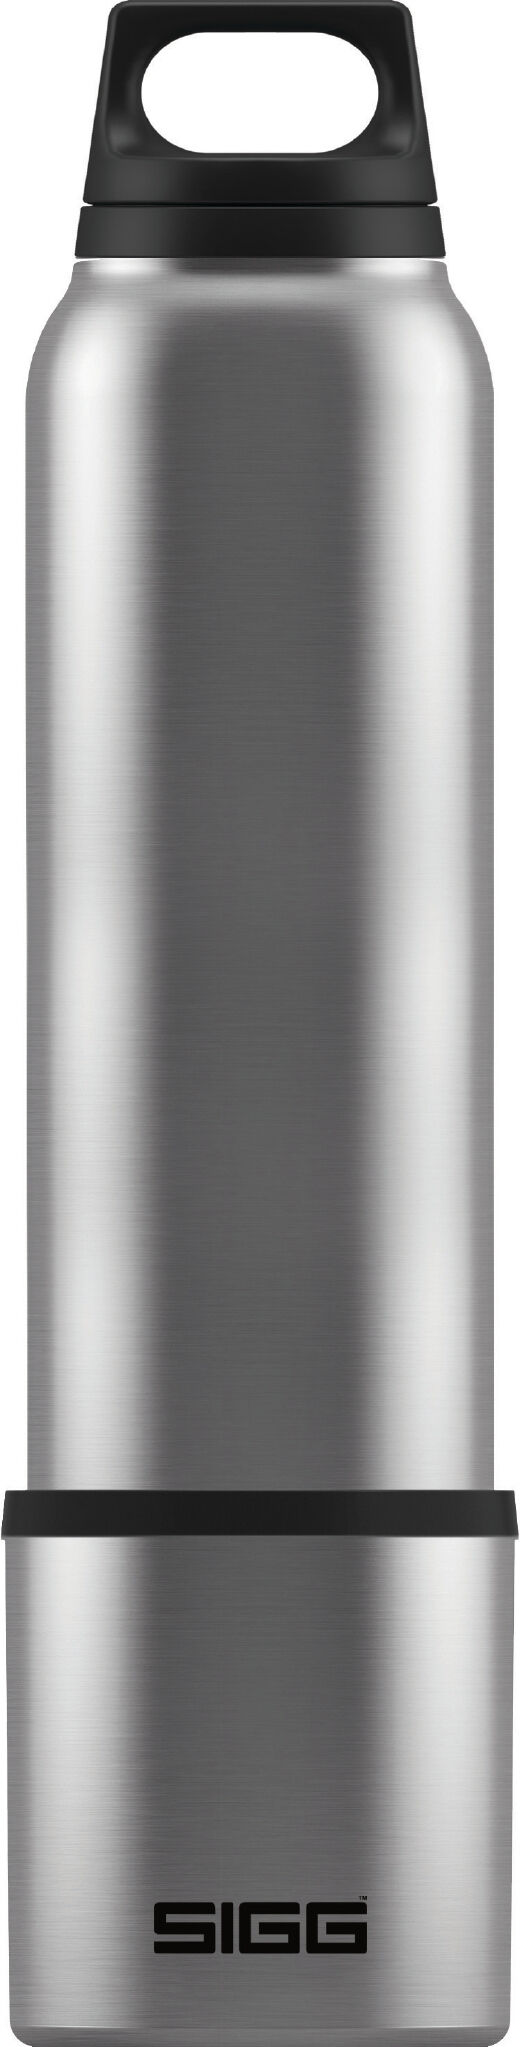 Sigg - Hot & Cold 1L Avec Cup - Vacuum flask